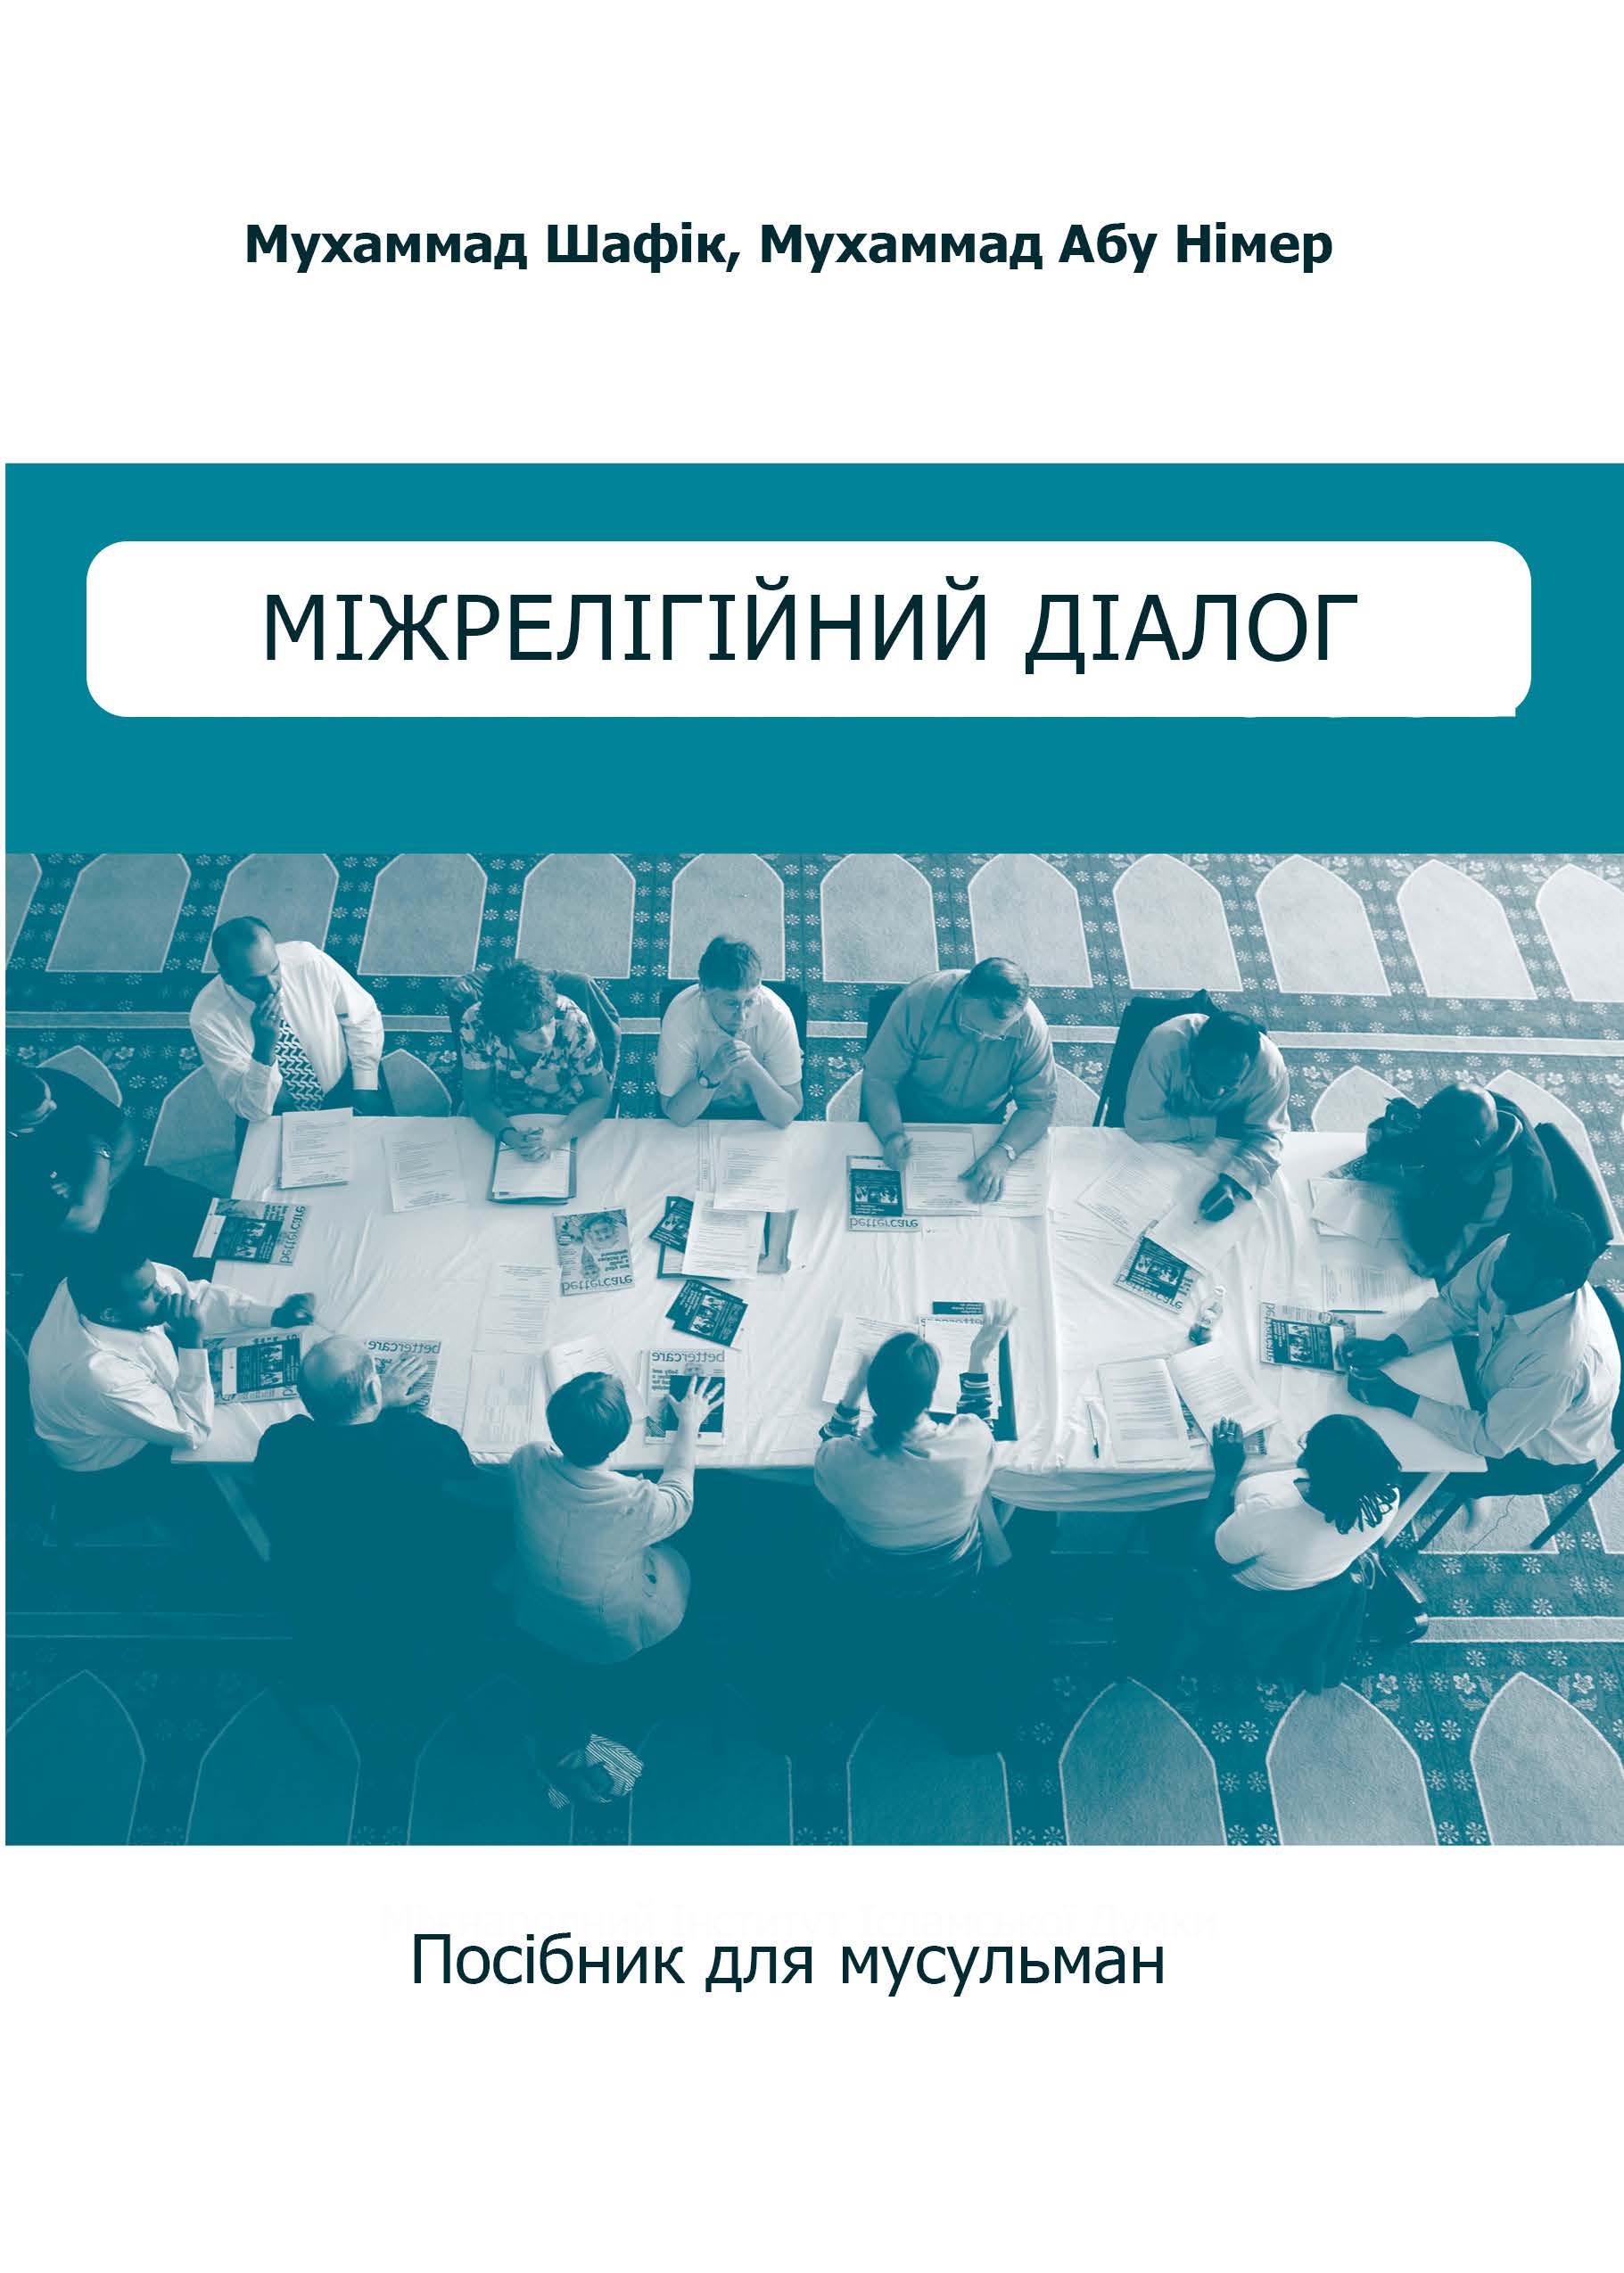 Ukrainian: Міжрелігійний діалог: посібник для мусульман (Interfaith Dialogue: A Guide For Muslims)